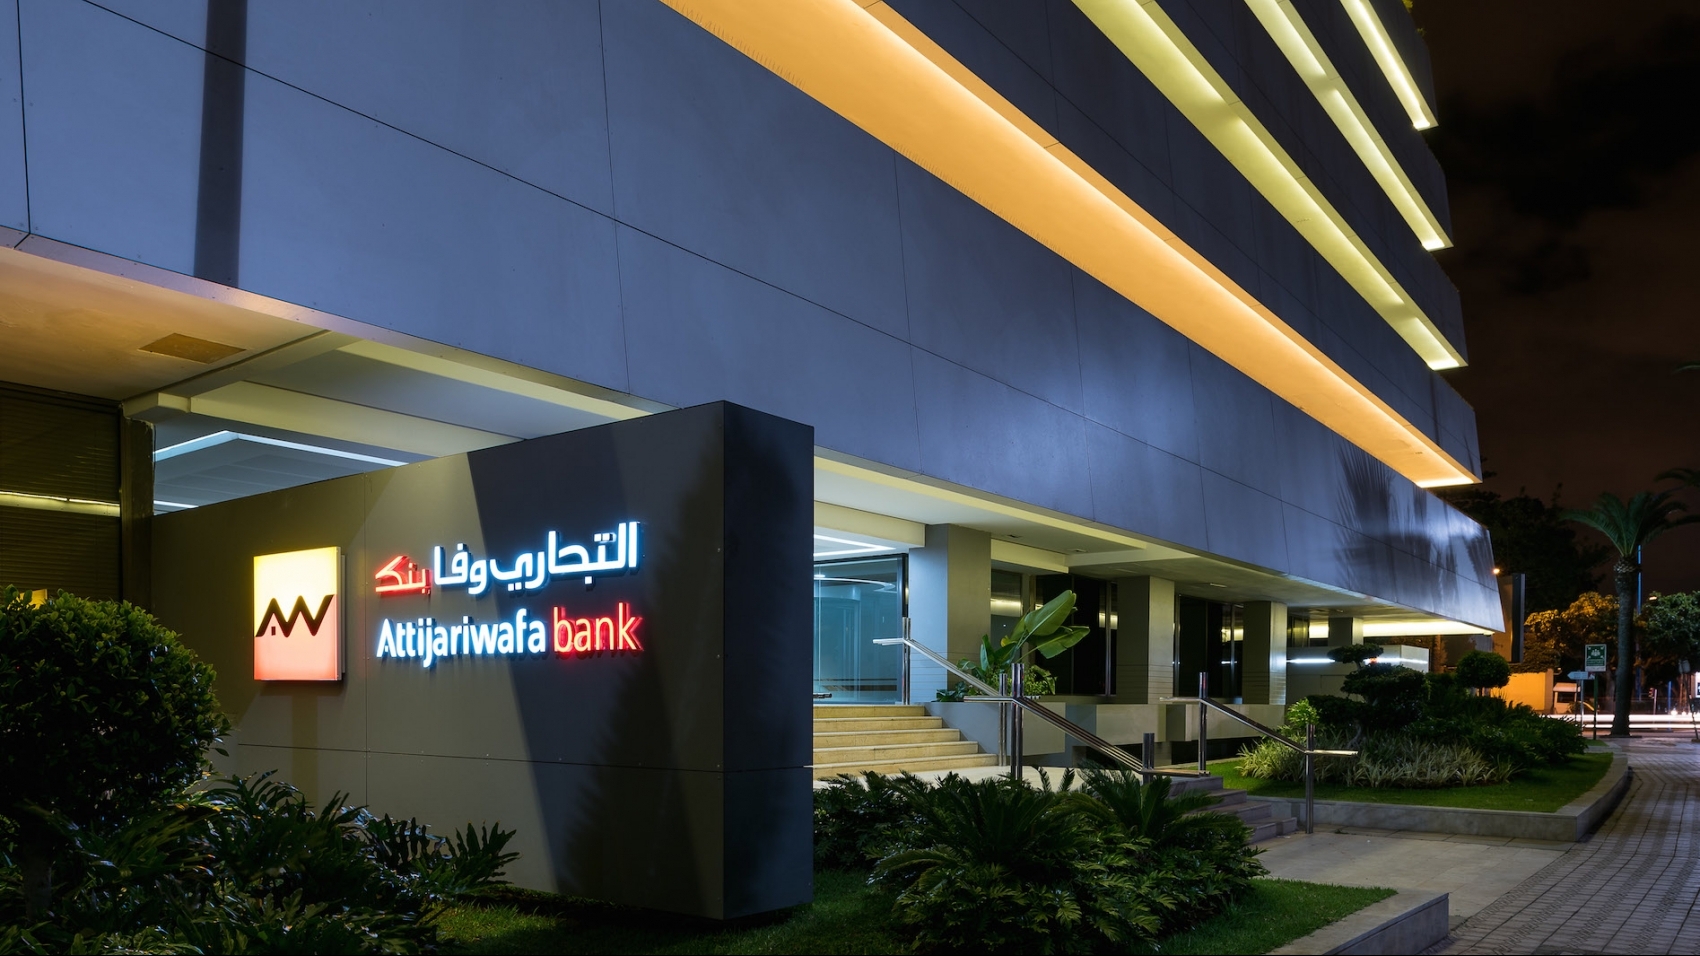 Attijariwafa bank élue «Banque la plus sûre au Maroc et en Afrique en 2020»